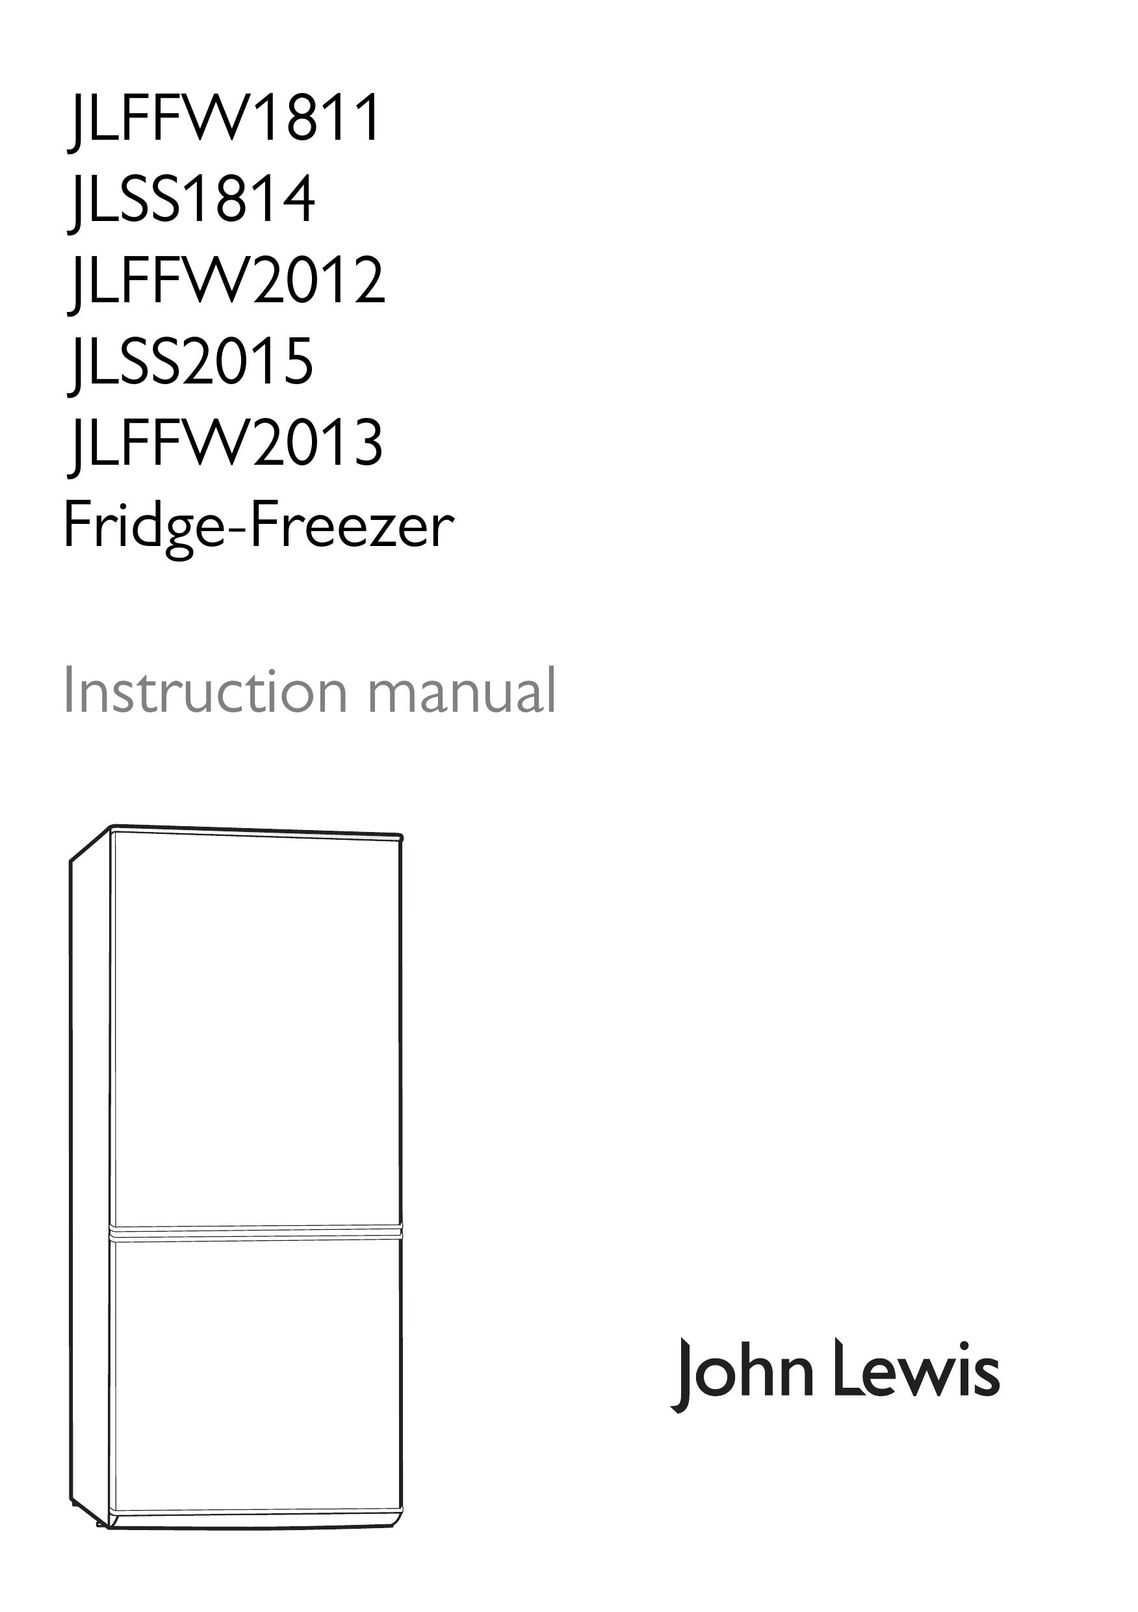 John Lewis JLFFW1811 Freezer User Manual